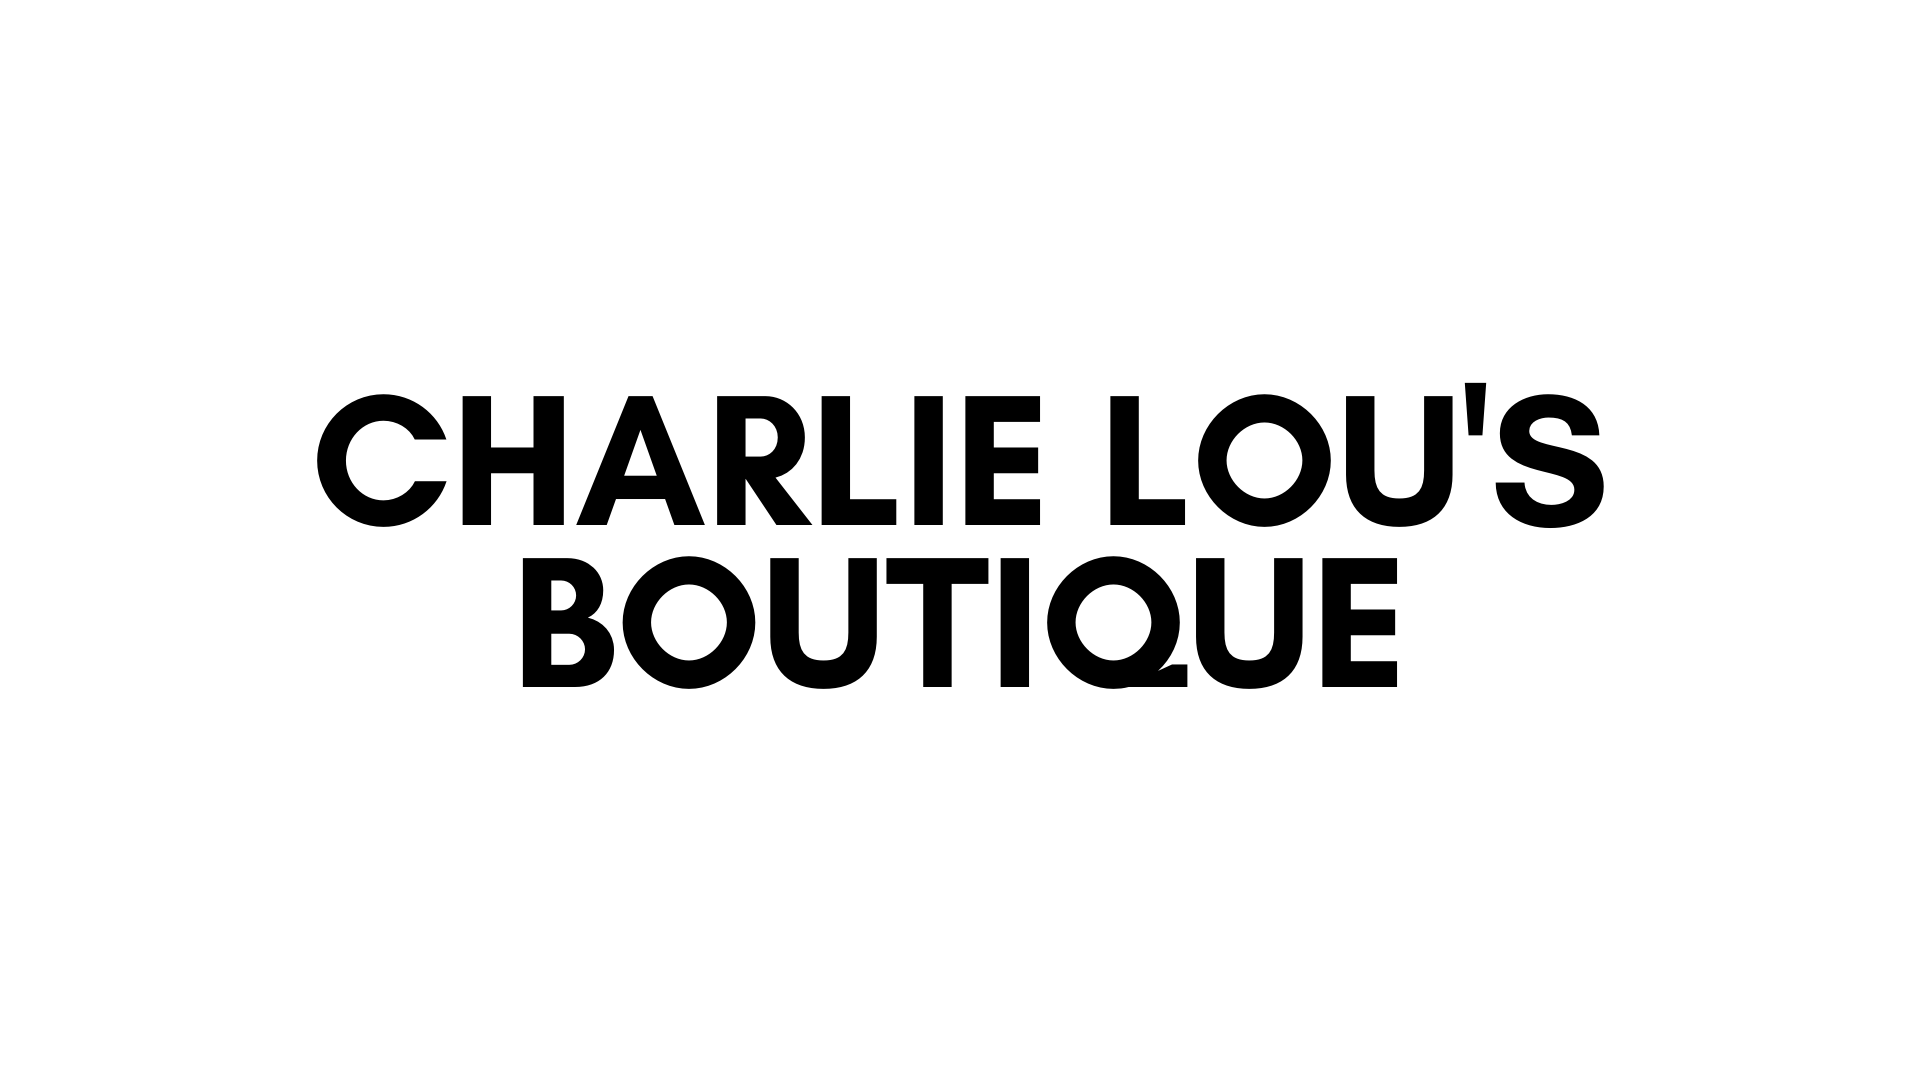 CHARLIE LOU'S BOUTIQUE